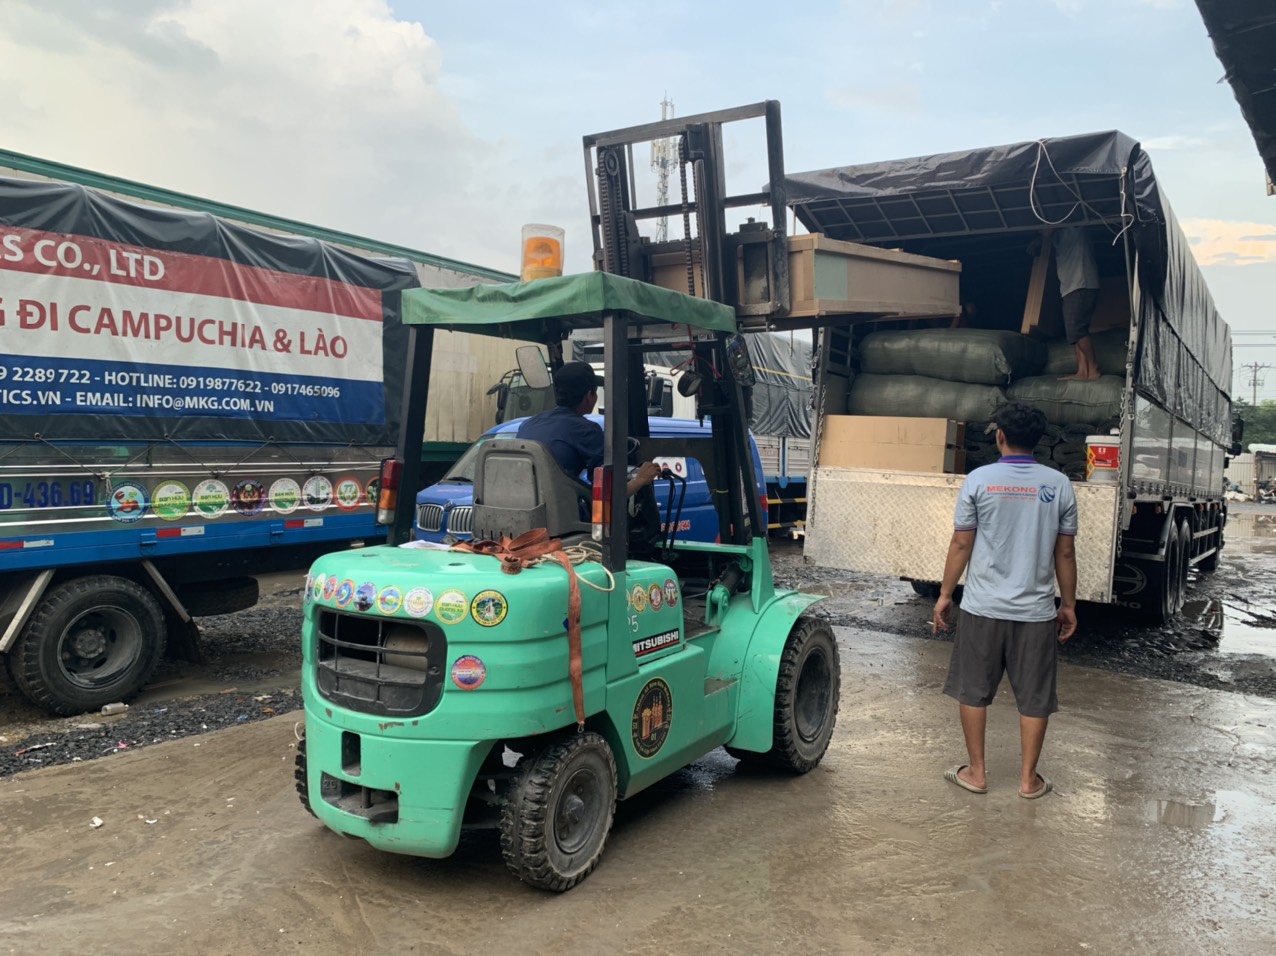 Hàng hóa ký gửi tại Mekong Logistics được sắp xếp bằng xe nâng chuyên dụng